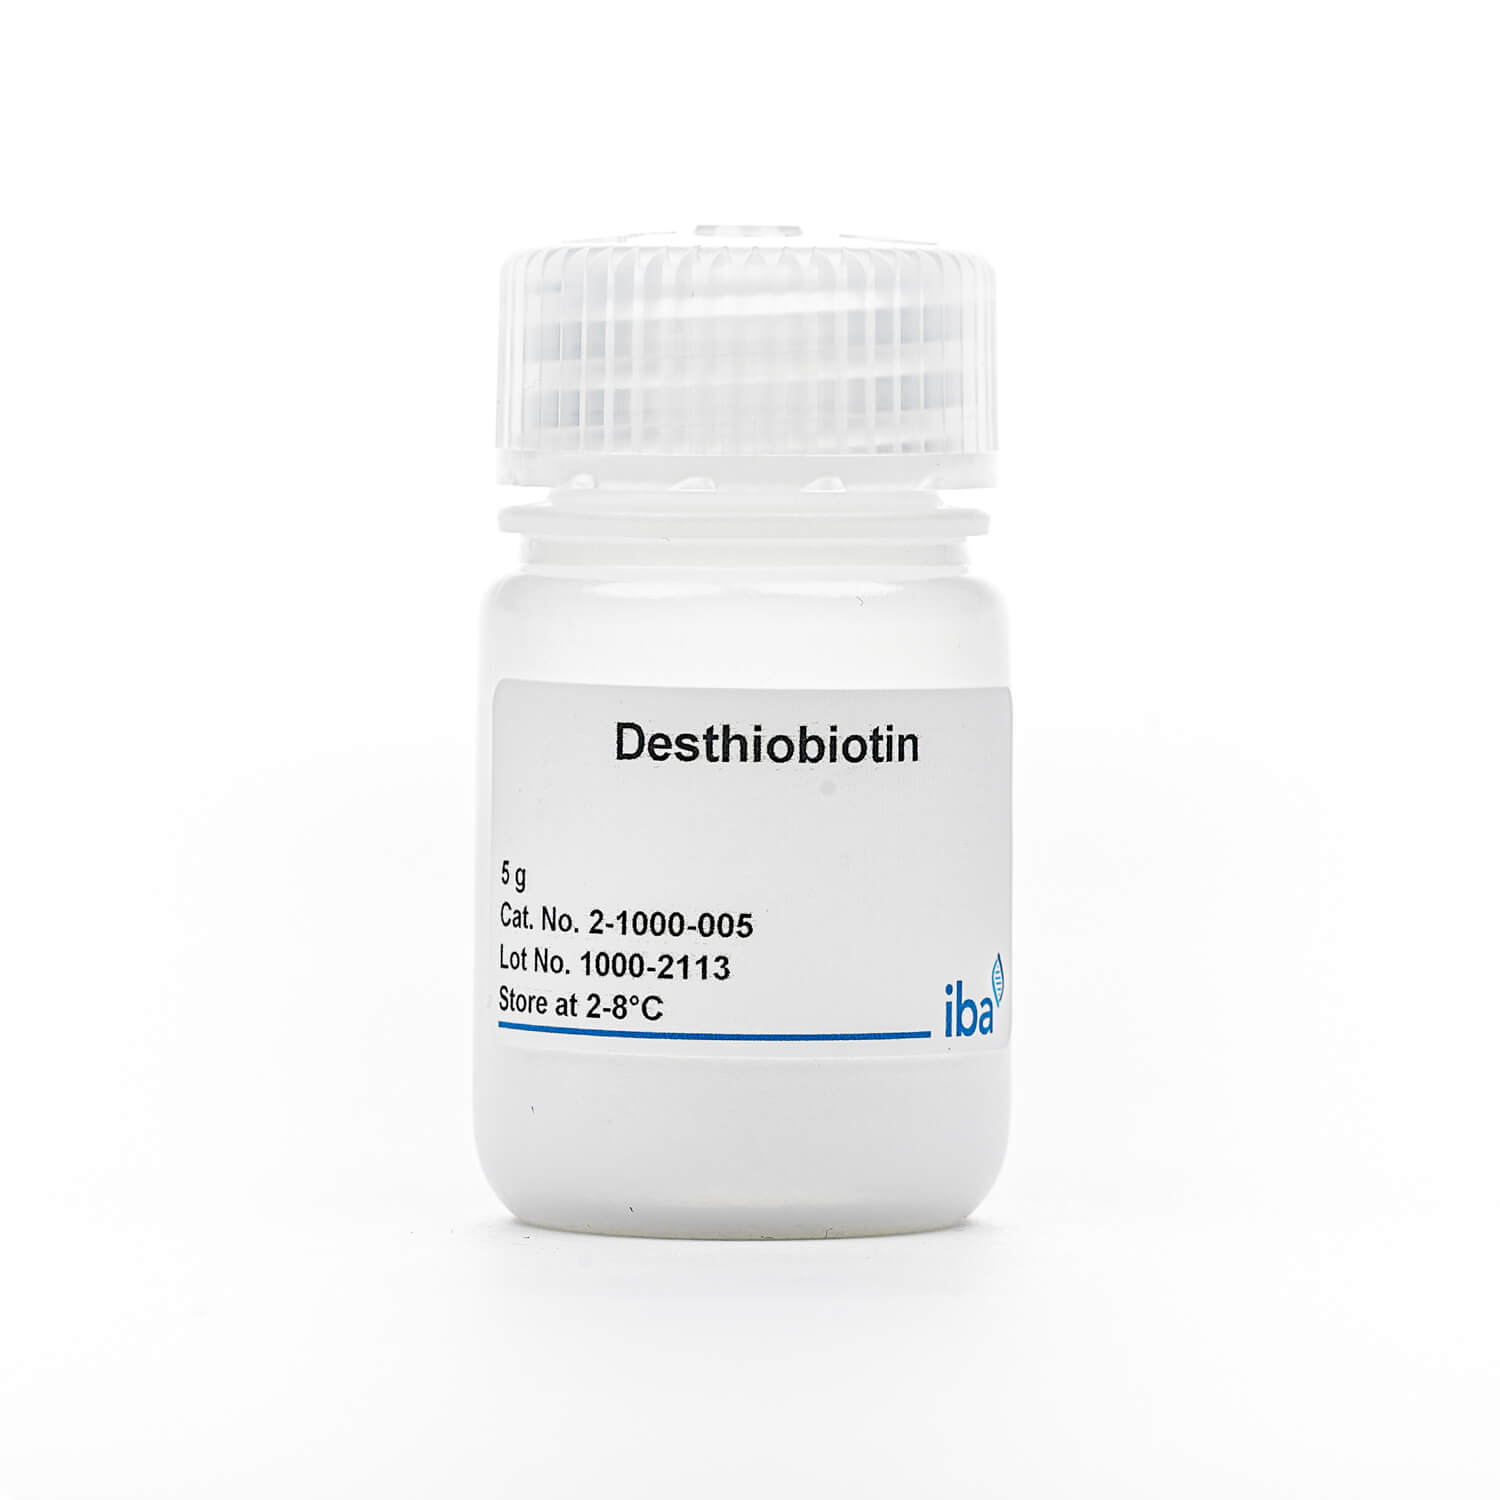 Desthiobiotin